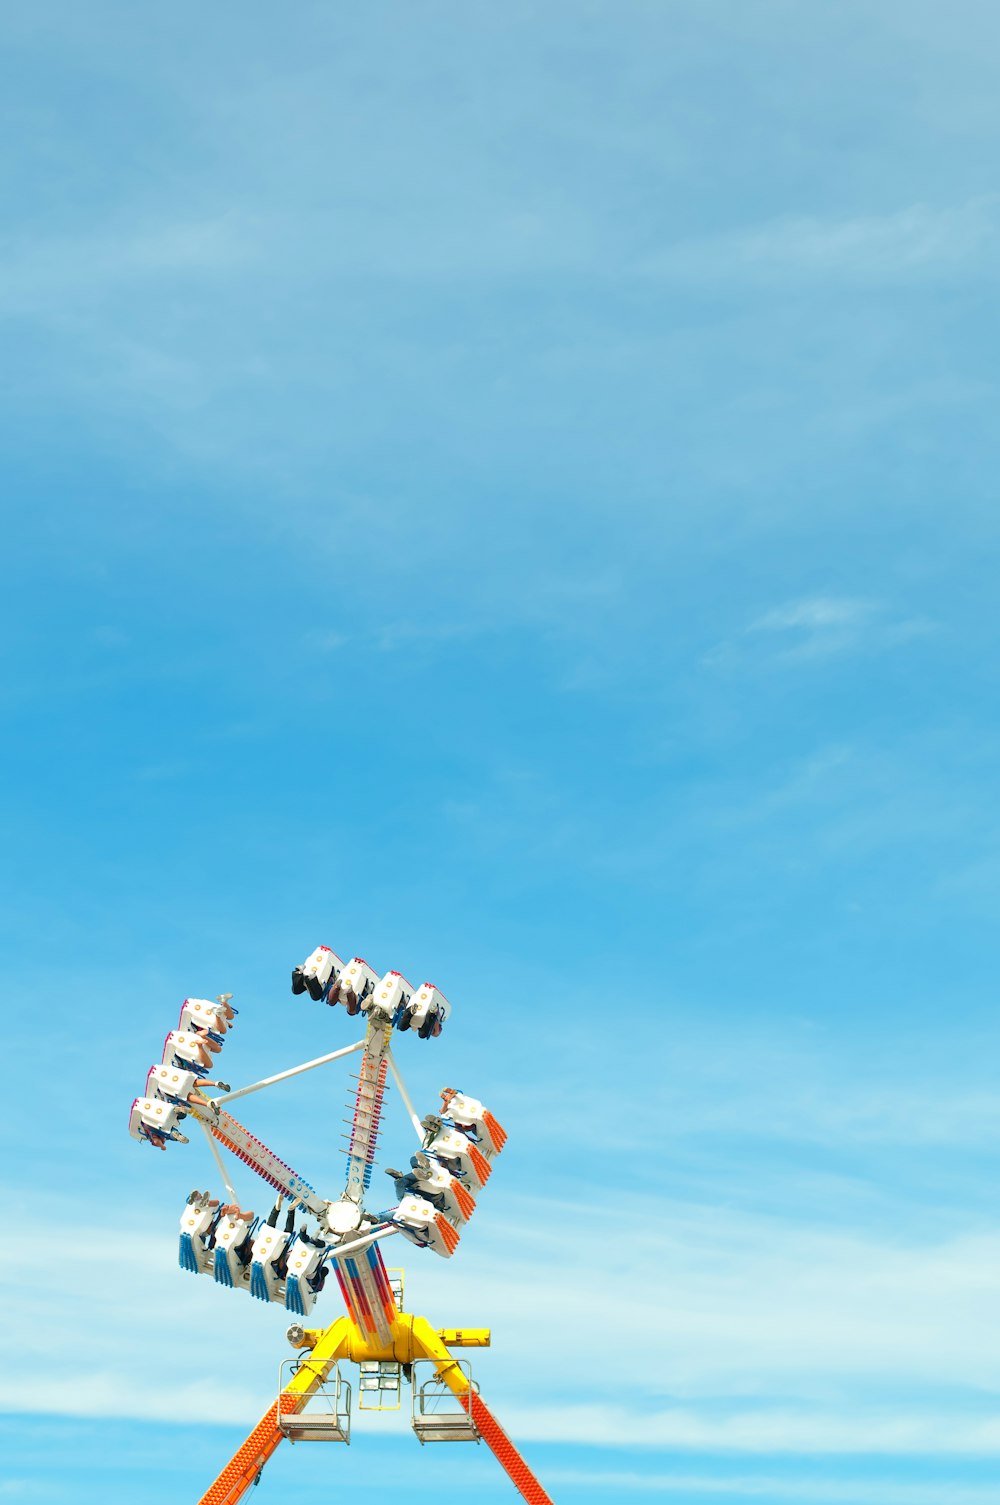 Foto de la atracción del parque de atracciones amarillo, naranja y azul bajo un cielo azul claro